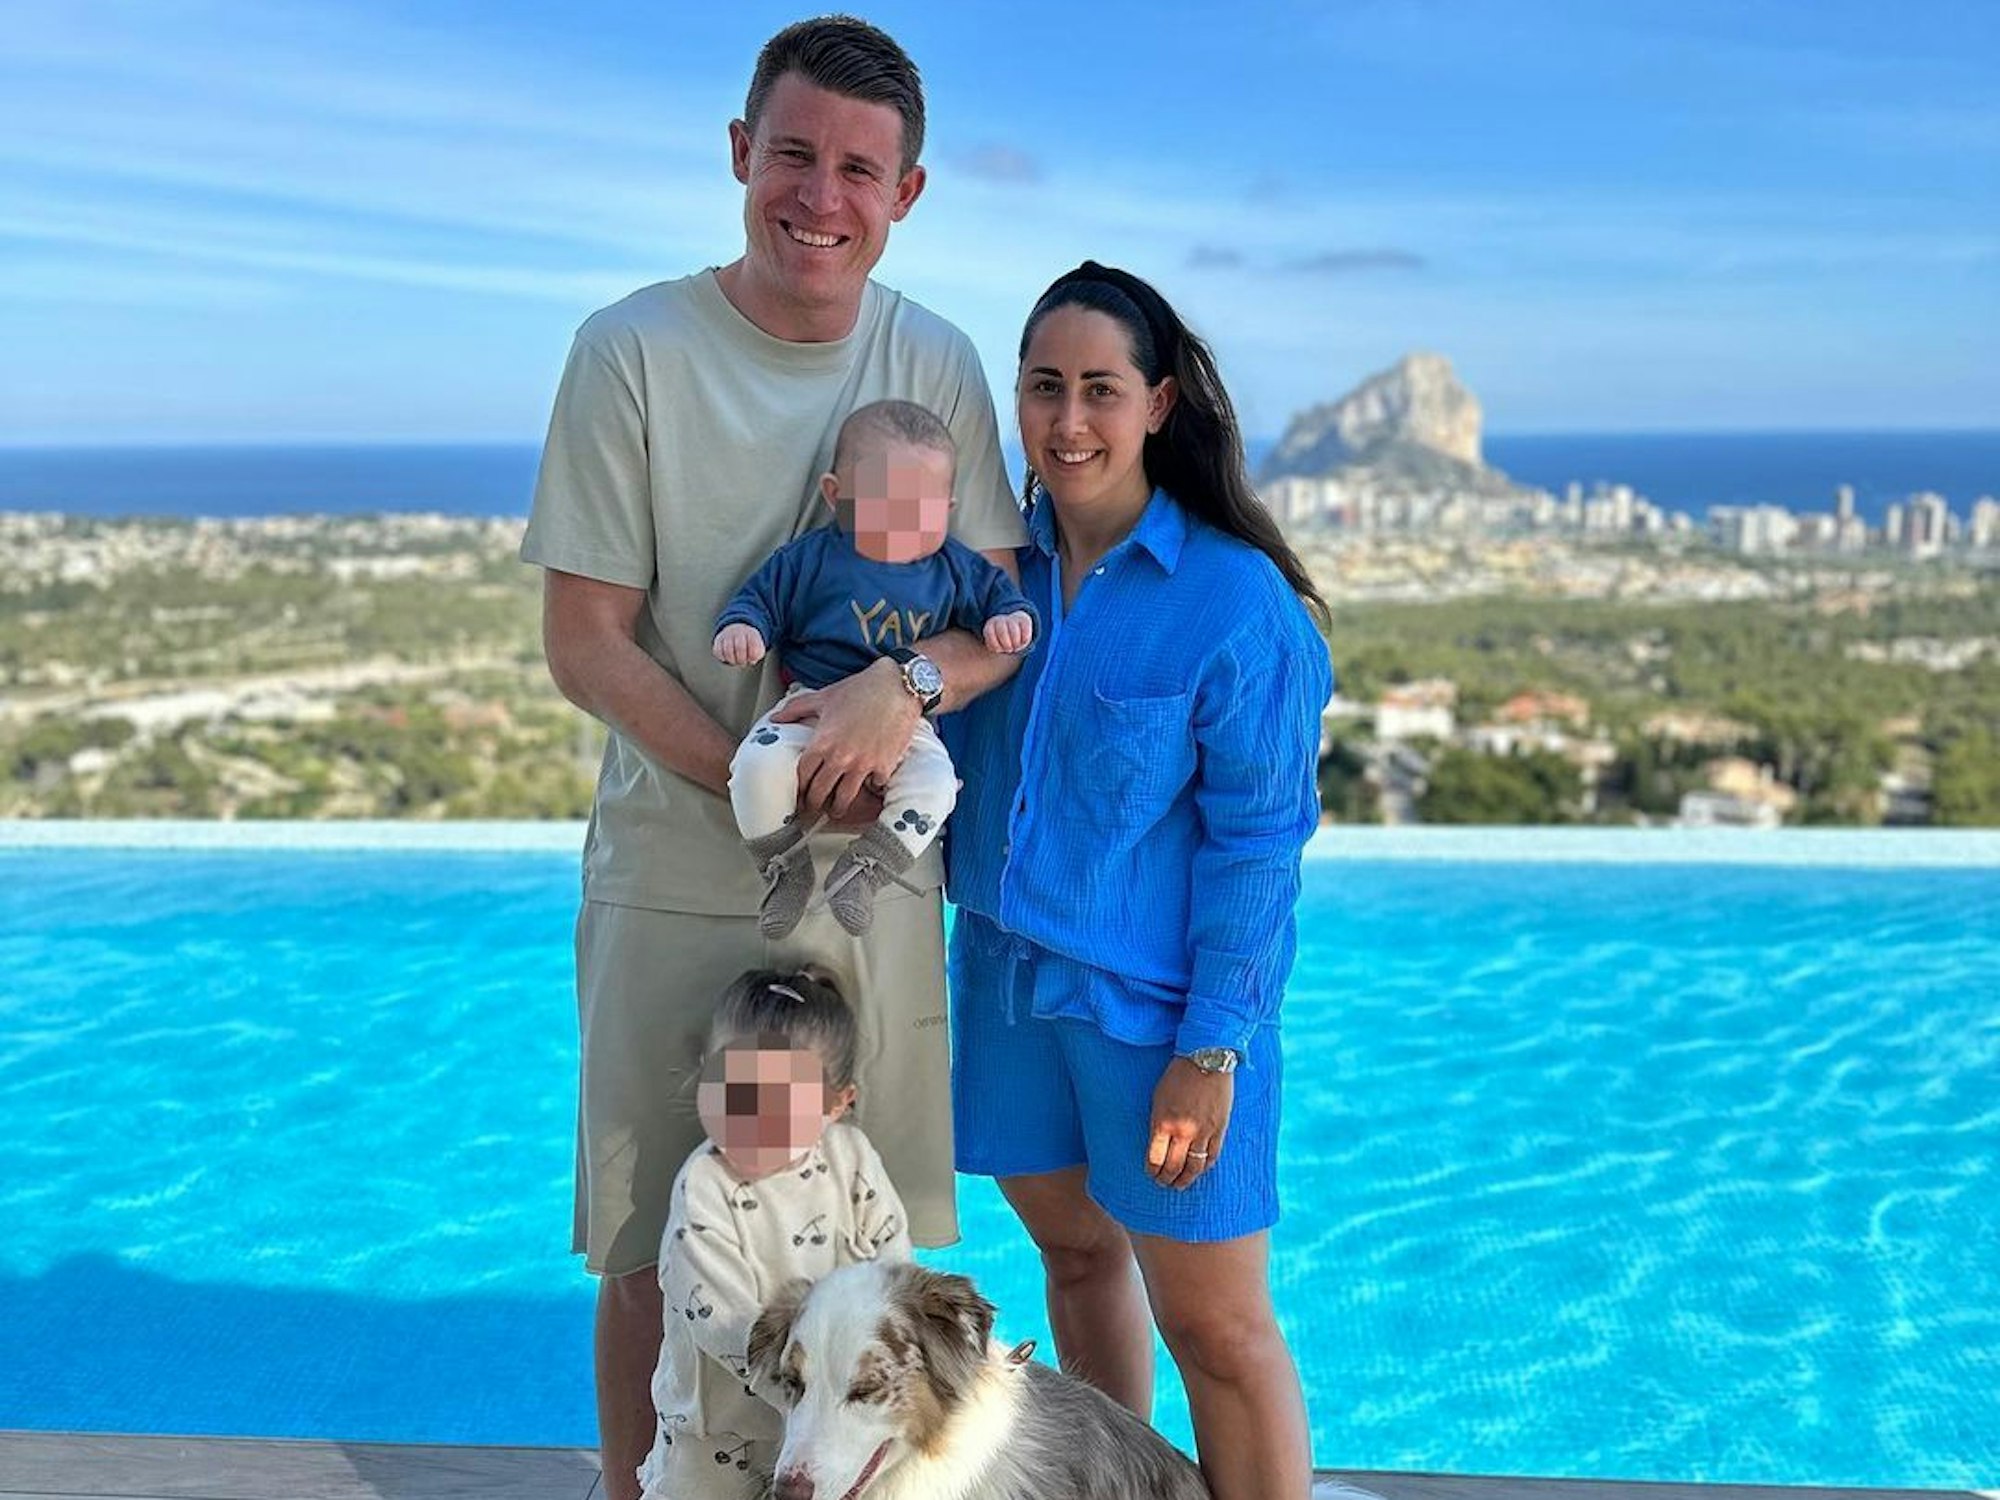 Dominique Heintz mit seiner Frau Laura, seinen beiden Kindern und seinem Hund im Spanien-Urlaub. Die Familie steht vor einem Pool mit Blick aufs Meer.